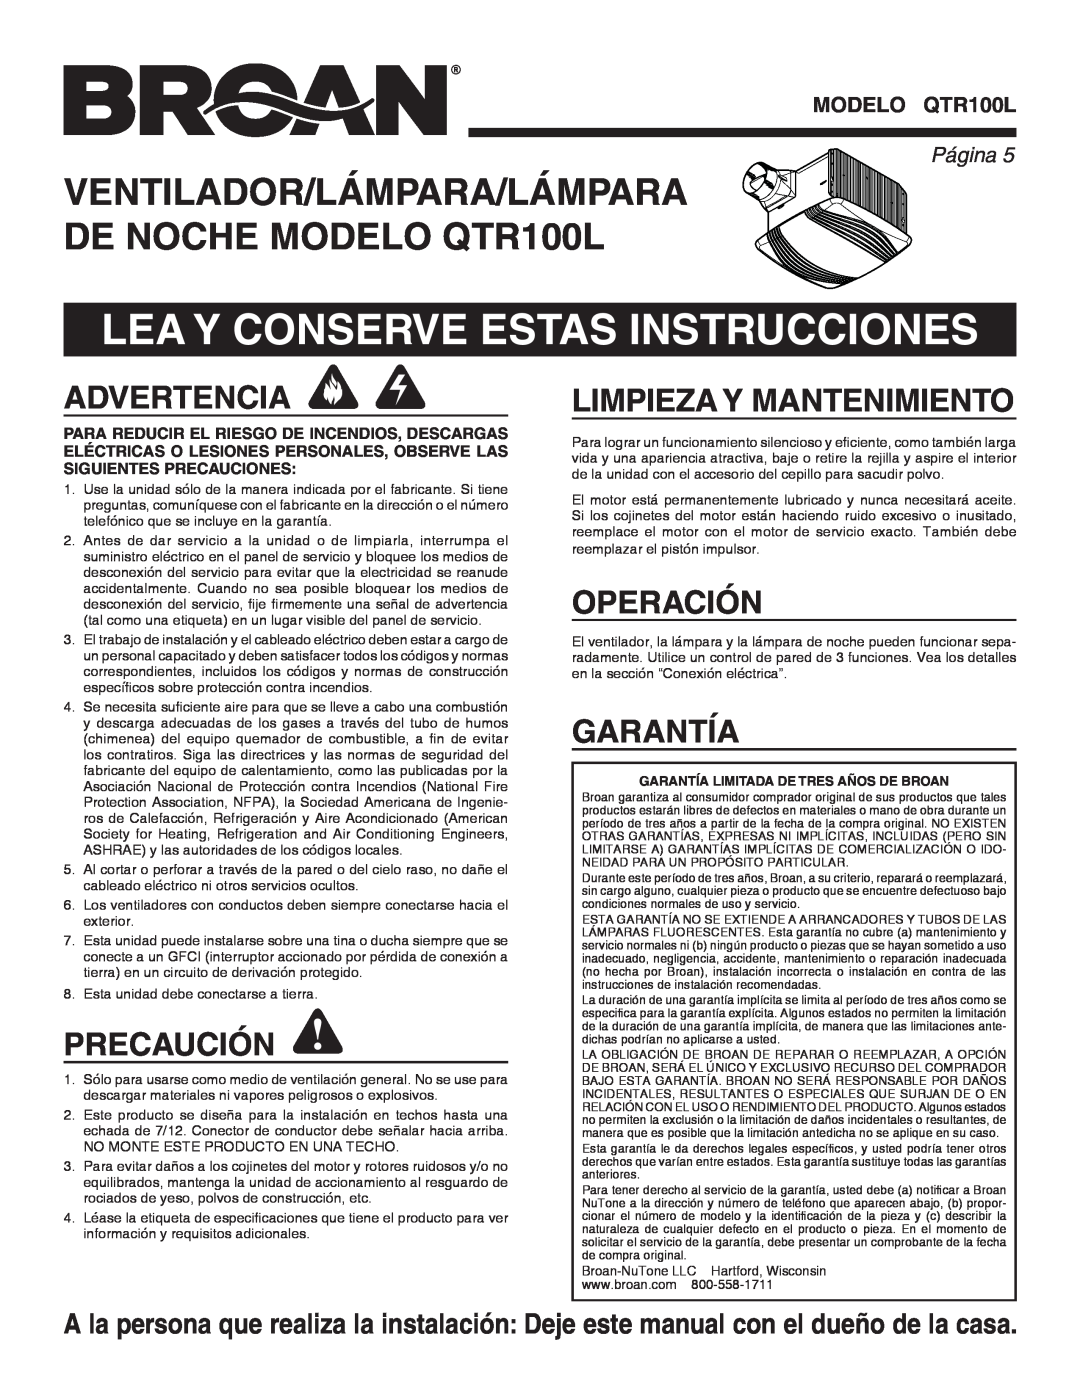 Broan QTR100L Lea Y Conserve Estas Instrucciones, Advertencia, Precaución, Limpieza Y Mantenimiento, Operación, Garantía 